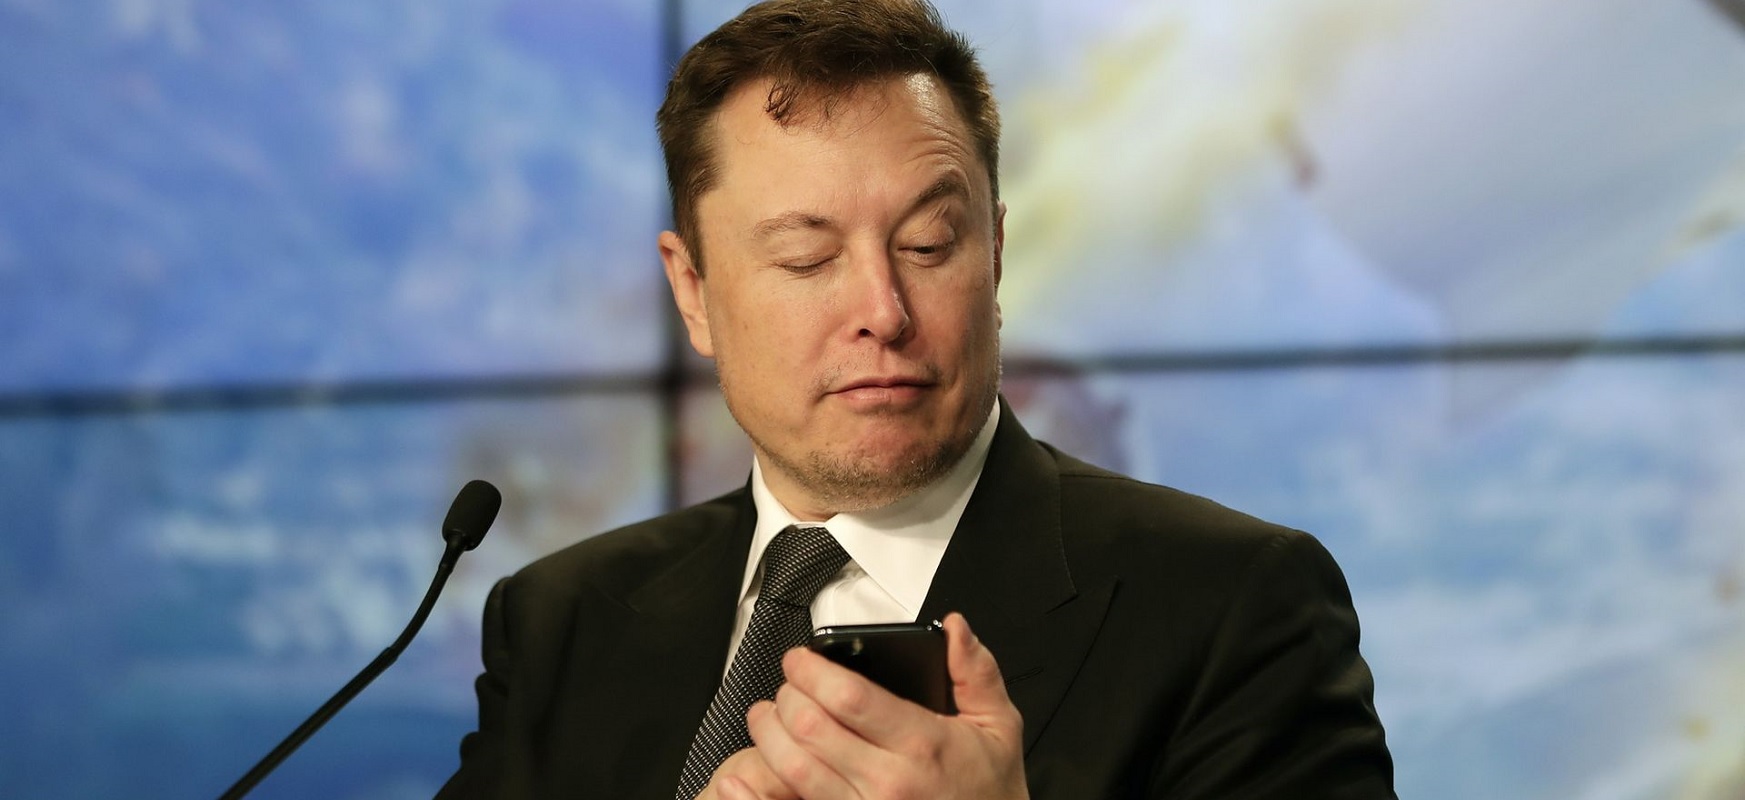 Elon Musk-ek honela dio: "Hartu pilula gorria". Matrizaren sortzaileek erreakzionatzen dute